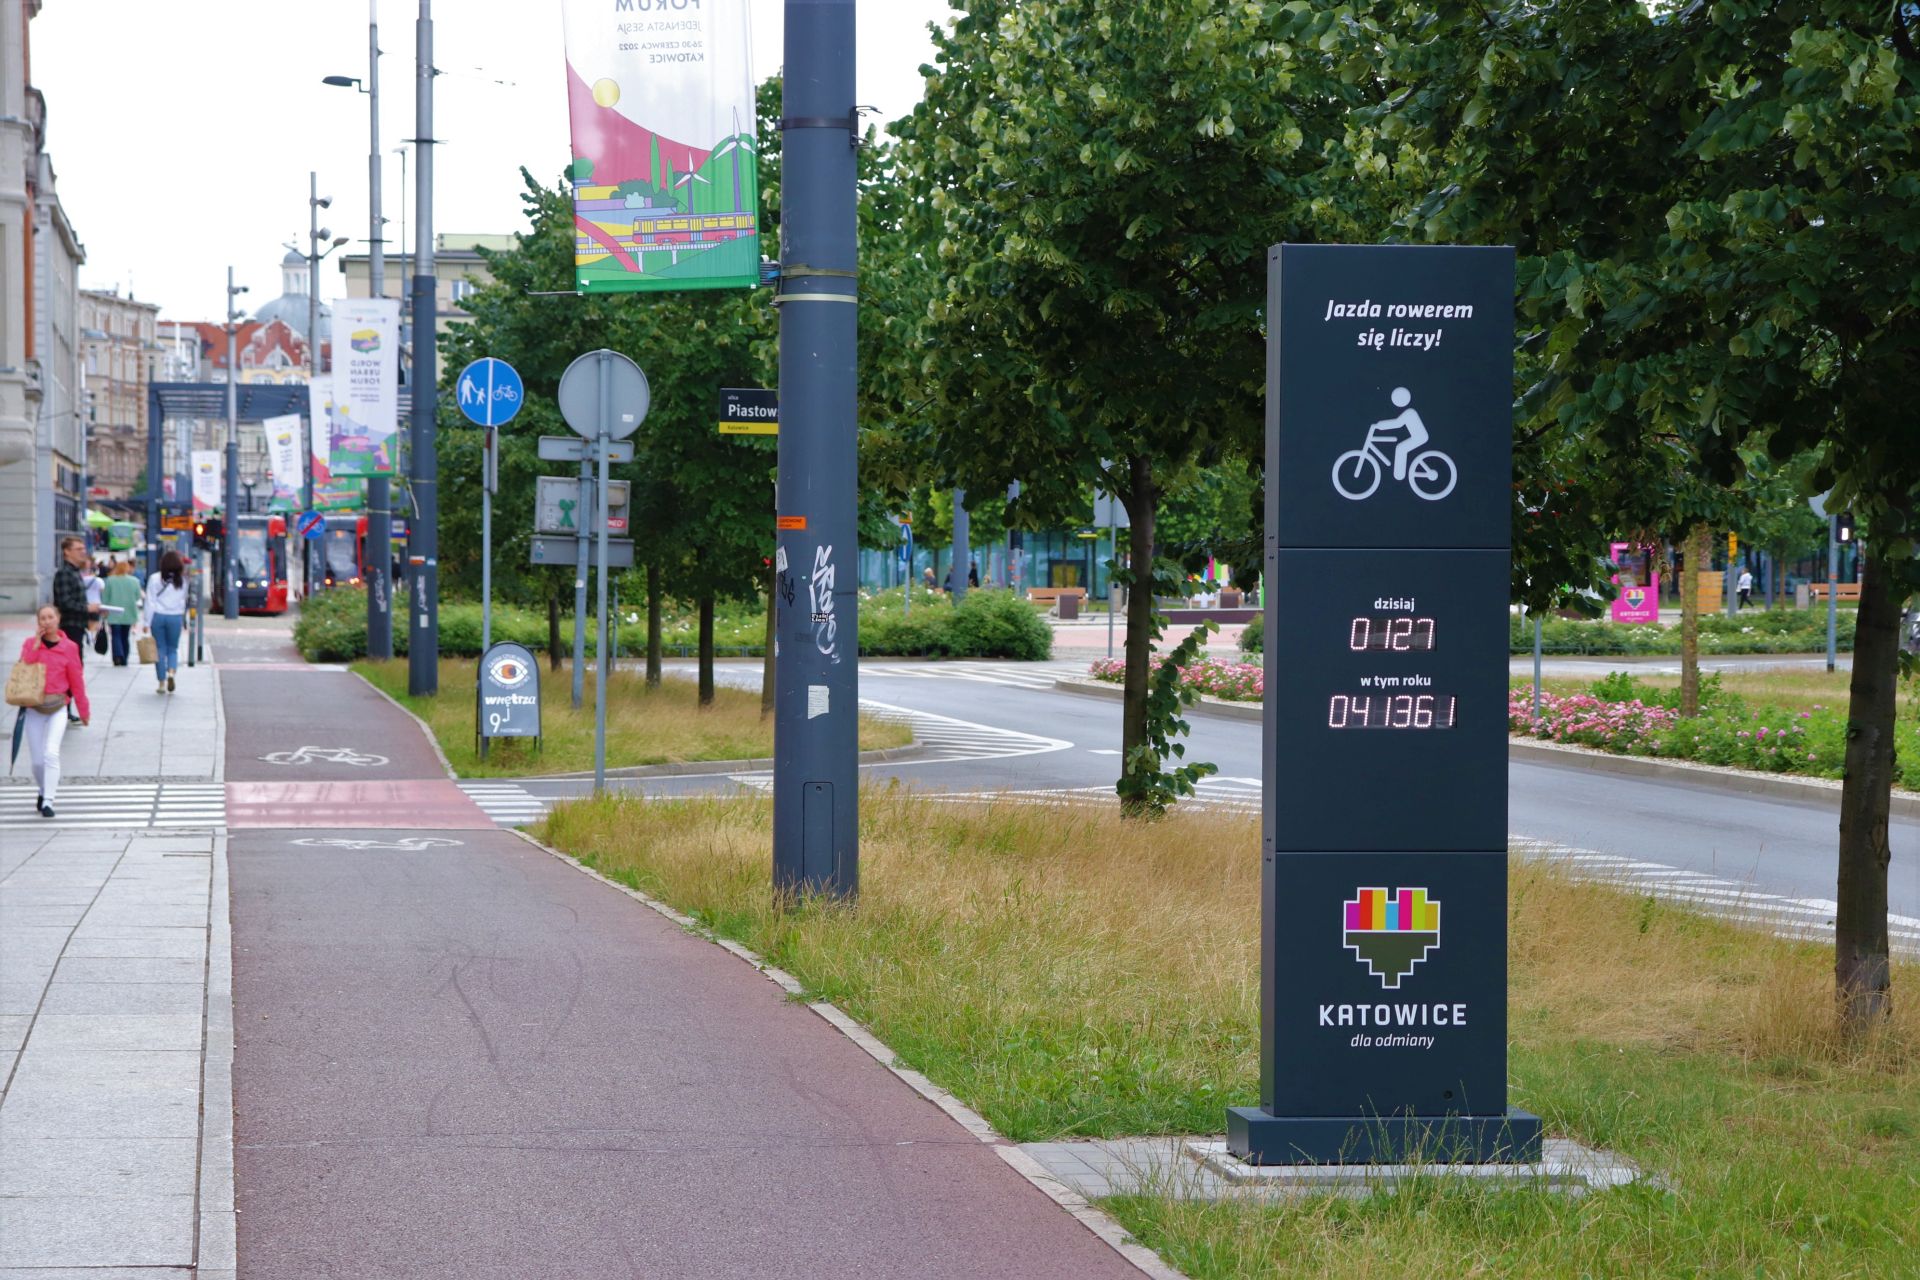 Fot. Kacper Jurkiewicz/WKATOWIACH.eu. W Katowicach stanął licznik rowerowy, który zlicza przejeżdżających rowerzystów